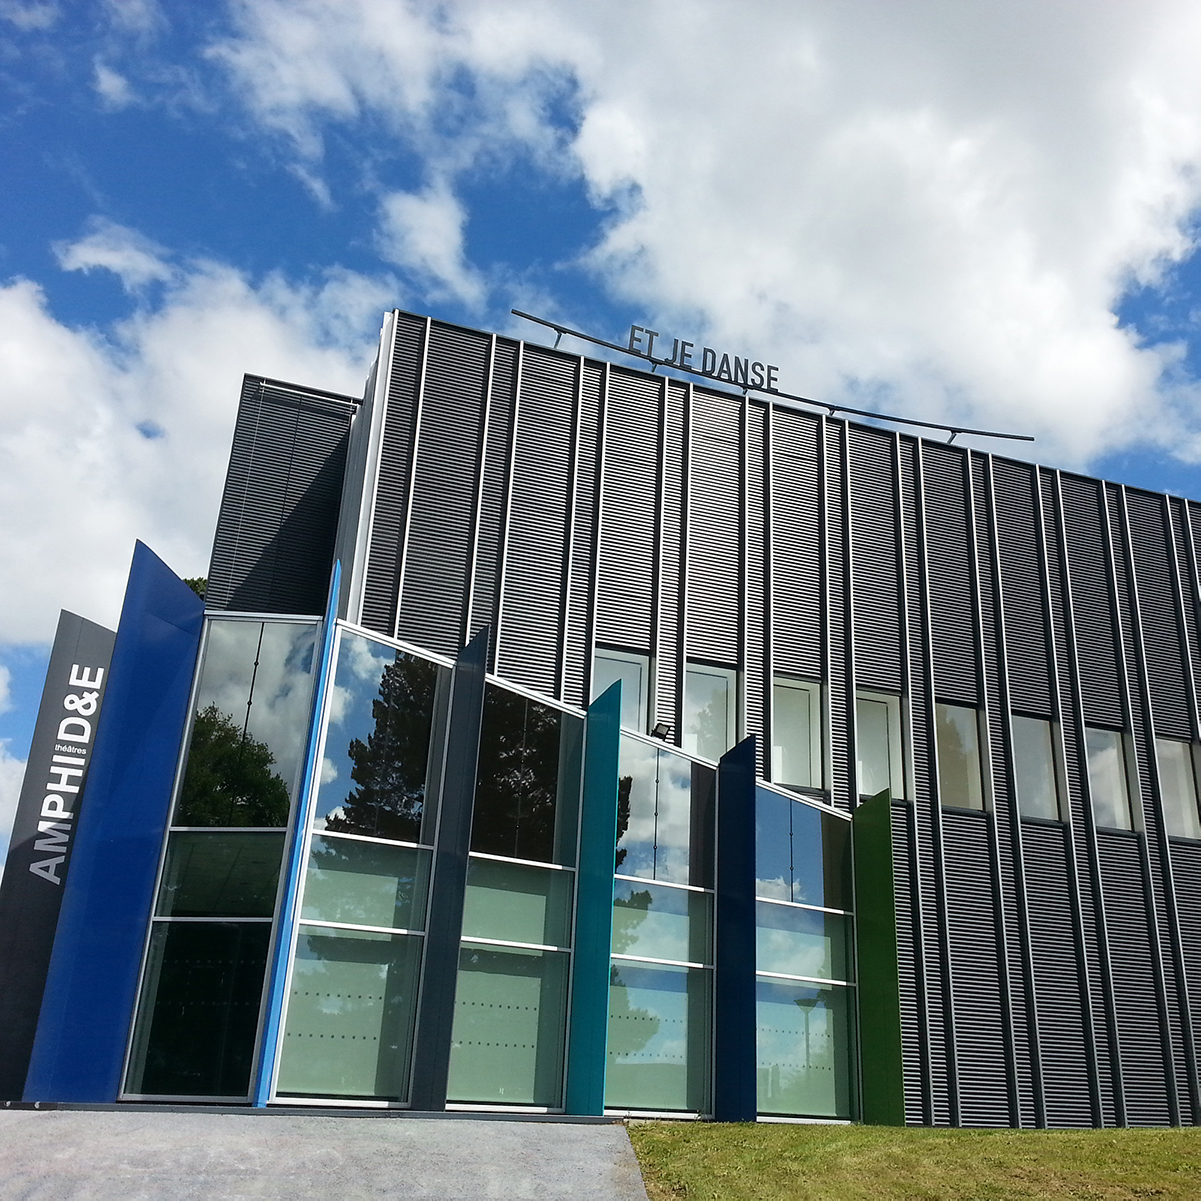 Campus prometteur Nouveau Tertre - Mission de réhabilitation - Université de Nantes